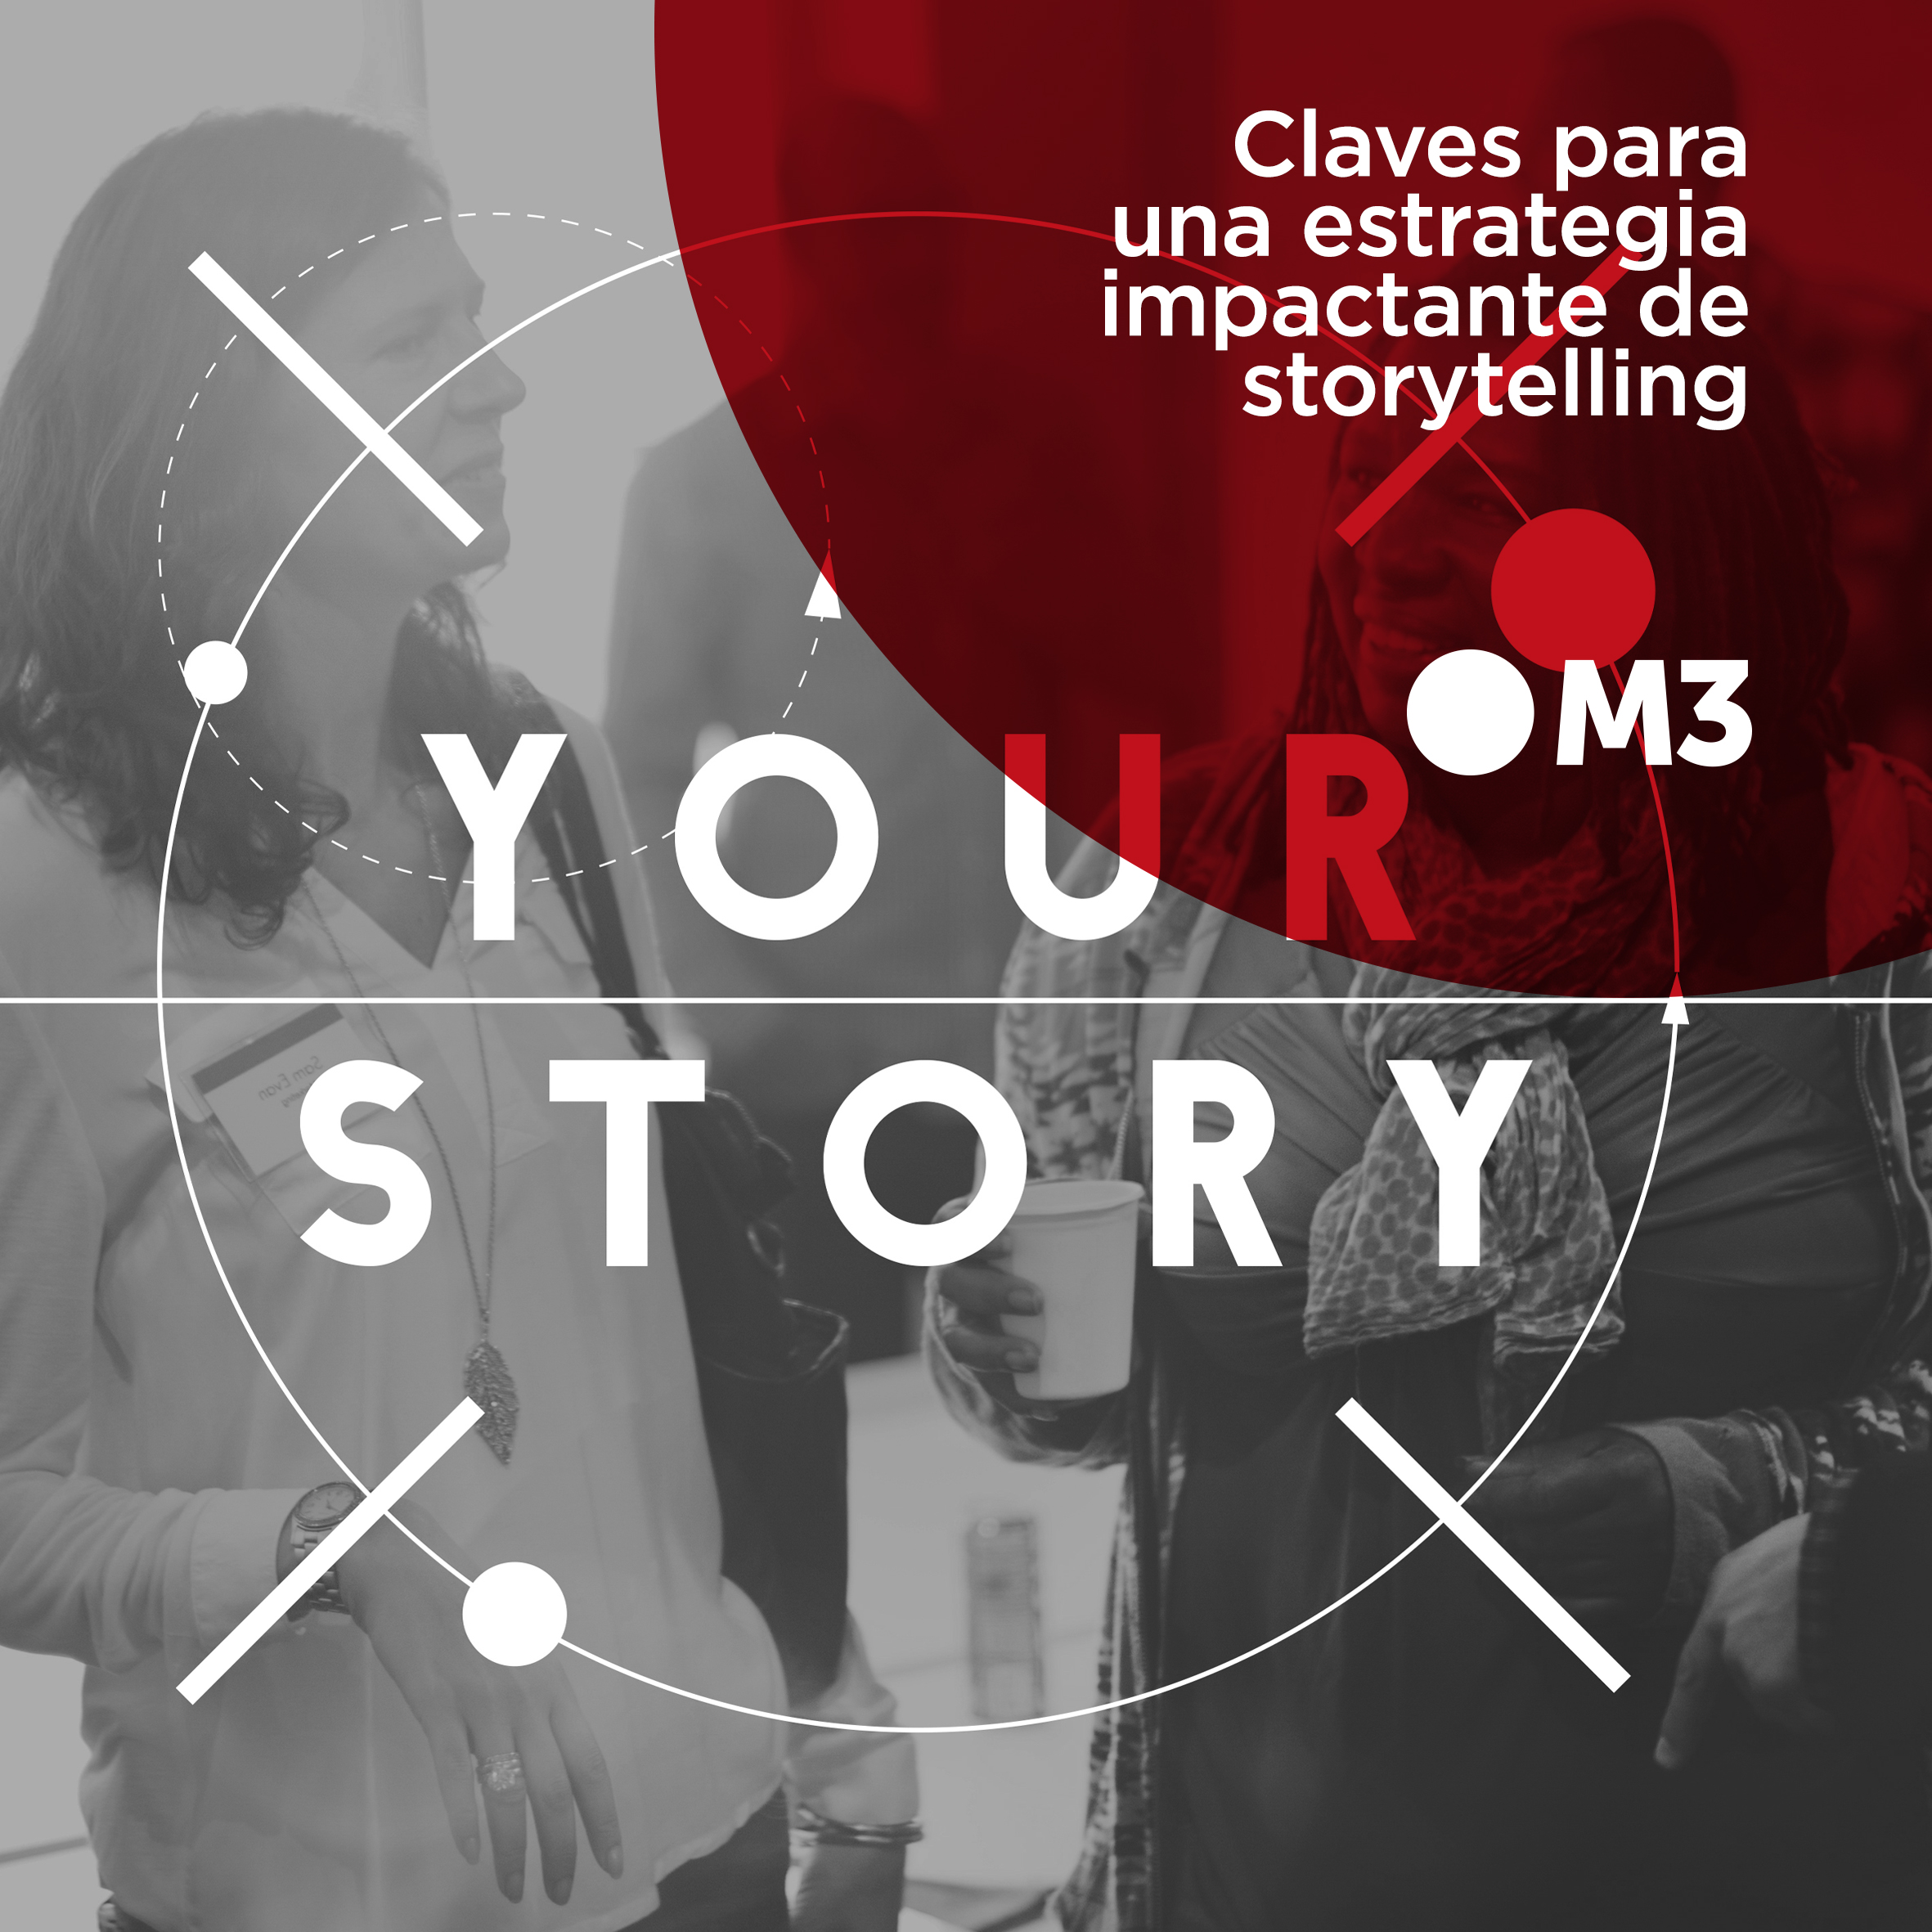 Claves para una estrategia impactante de storytelling